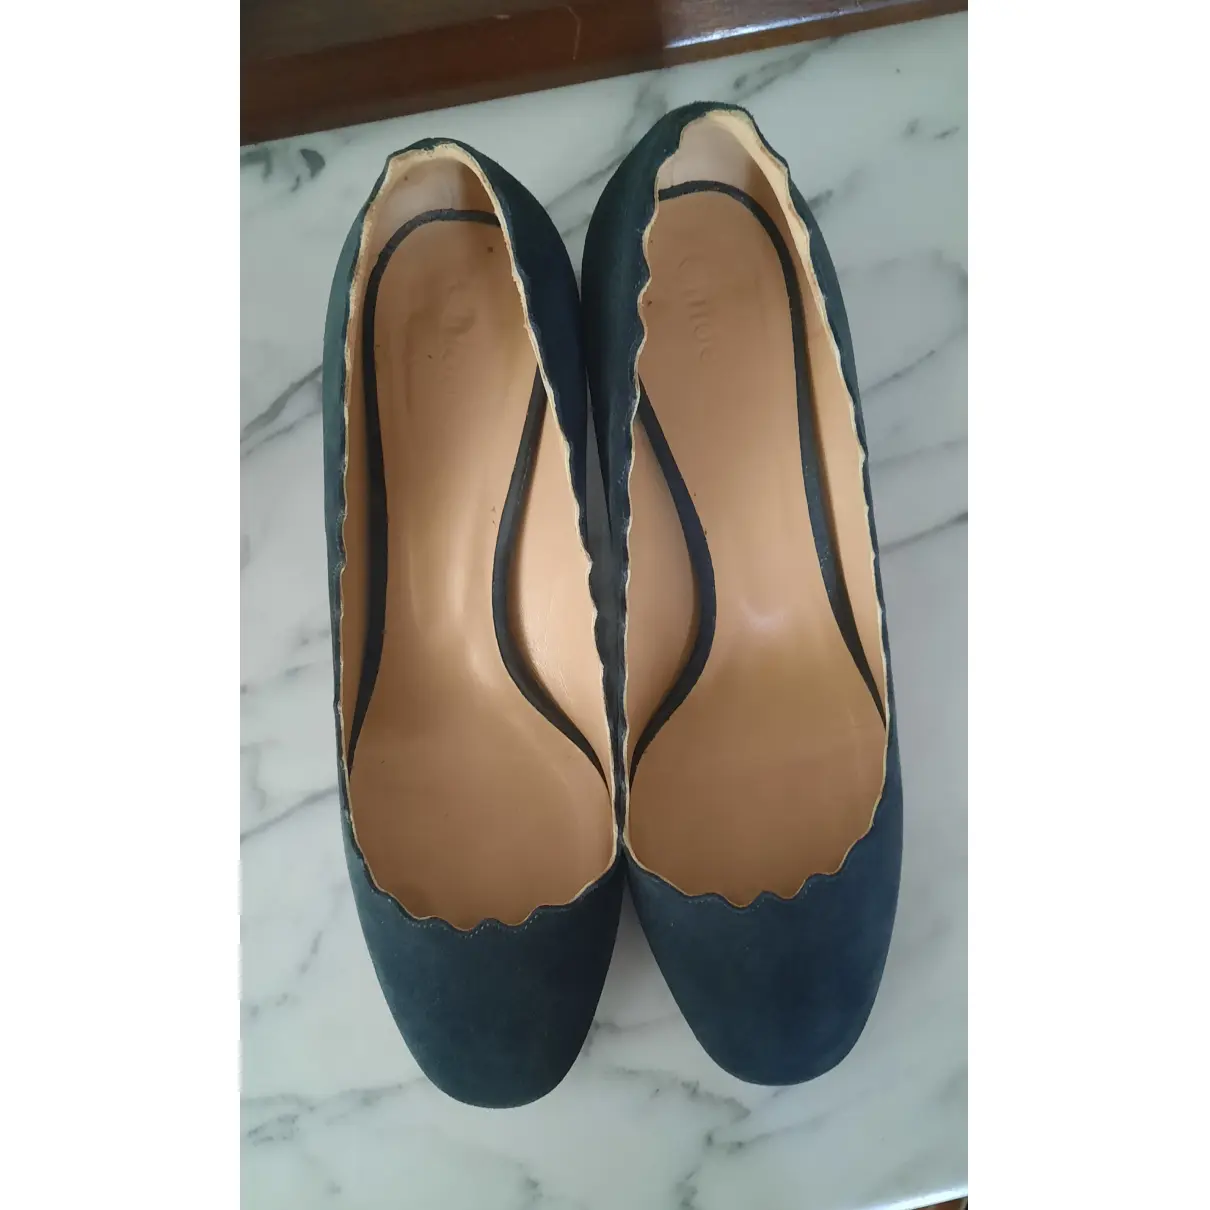 Buy Chloé Lauren heels online